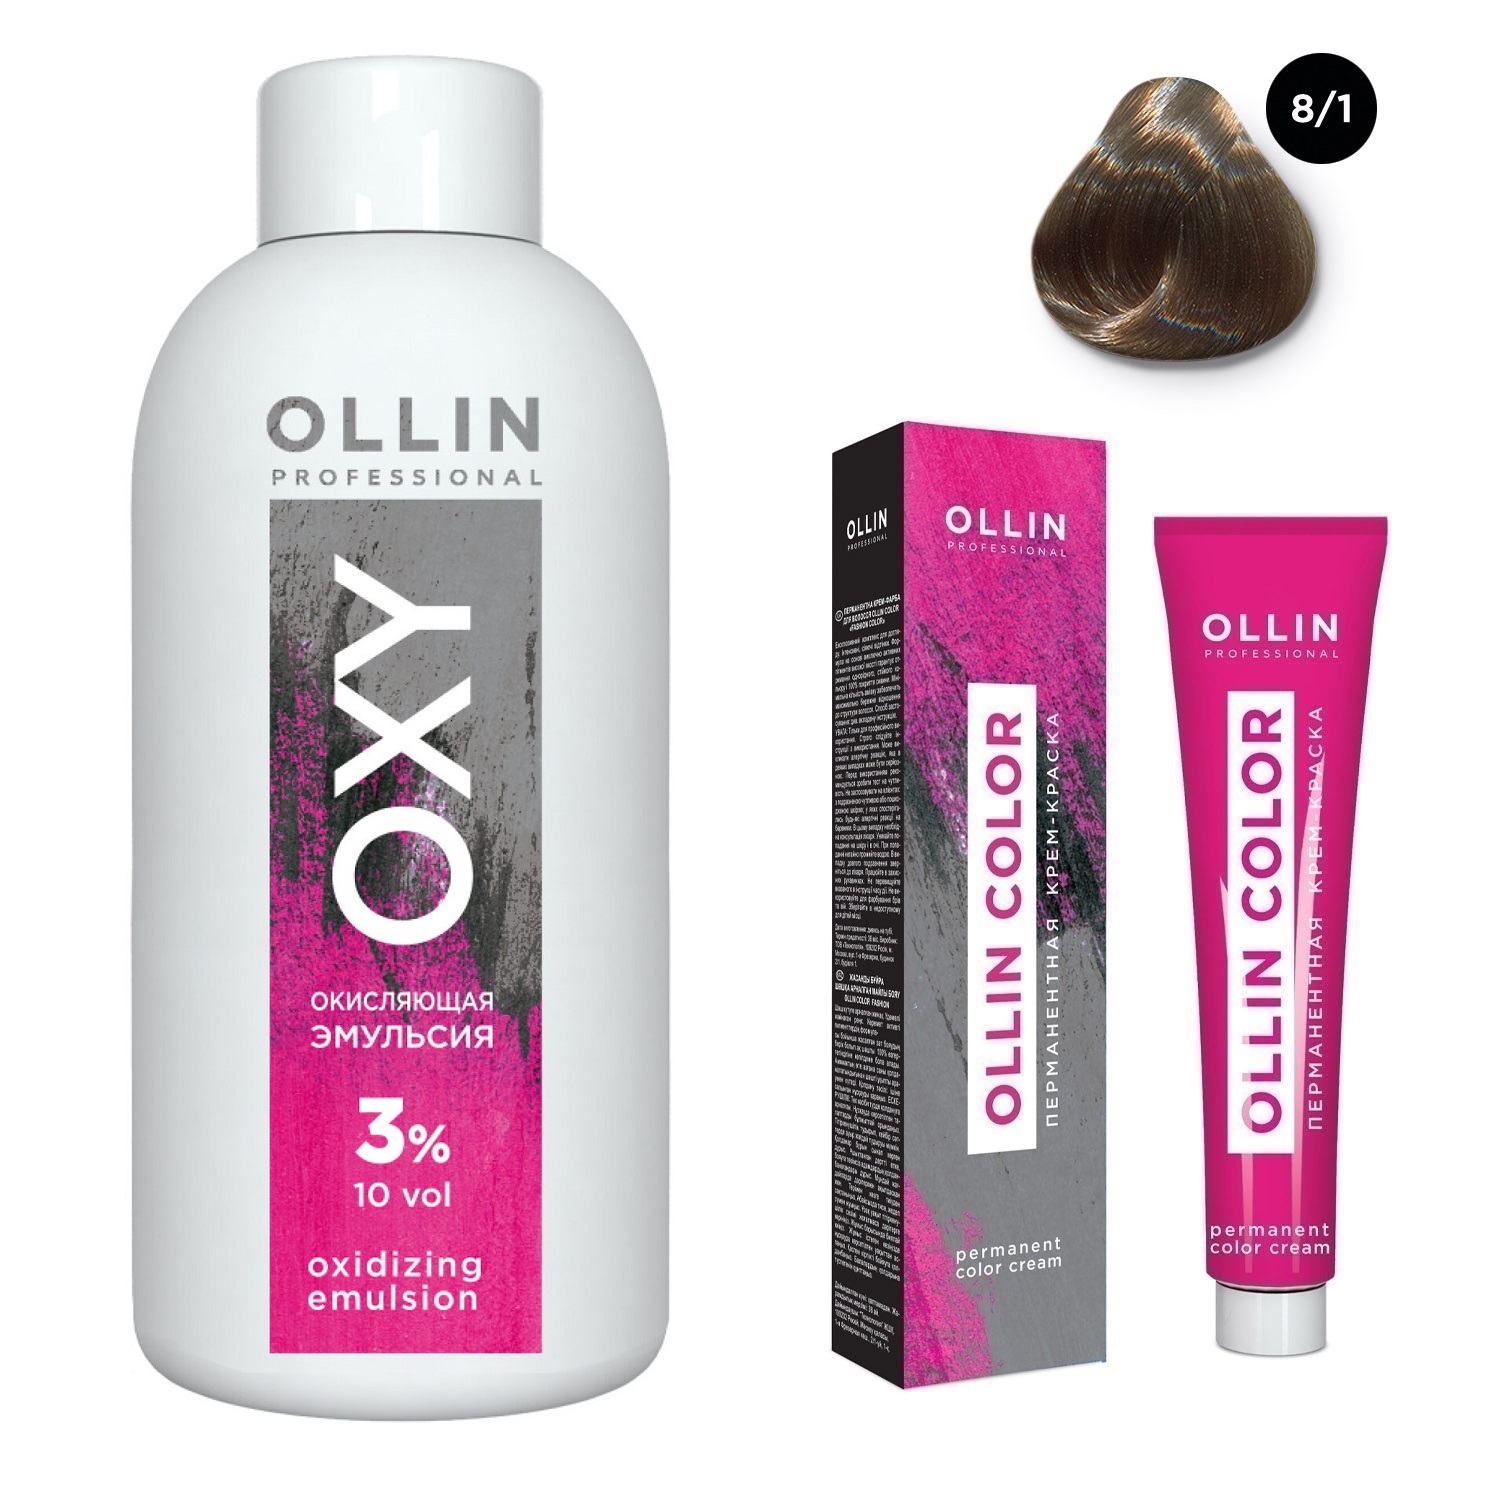 Ollin Professional Набор Перманентная крем-краска для волос Ollin Color оттенок 8/1 светло-русый пепельный 100 мл + Окисляющая эмульсия Oxy 3% 150 мл (Ollin Professional, Ollin Color)